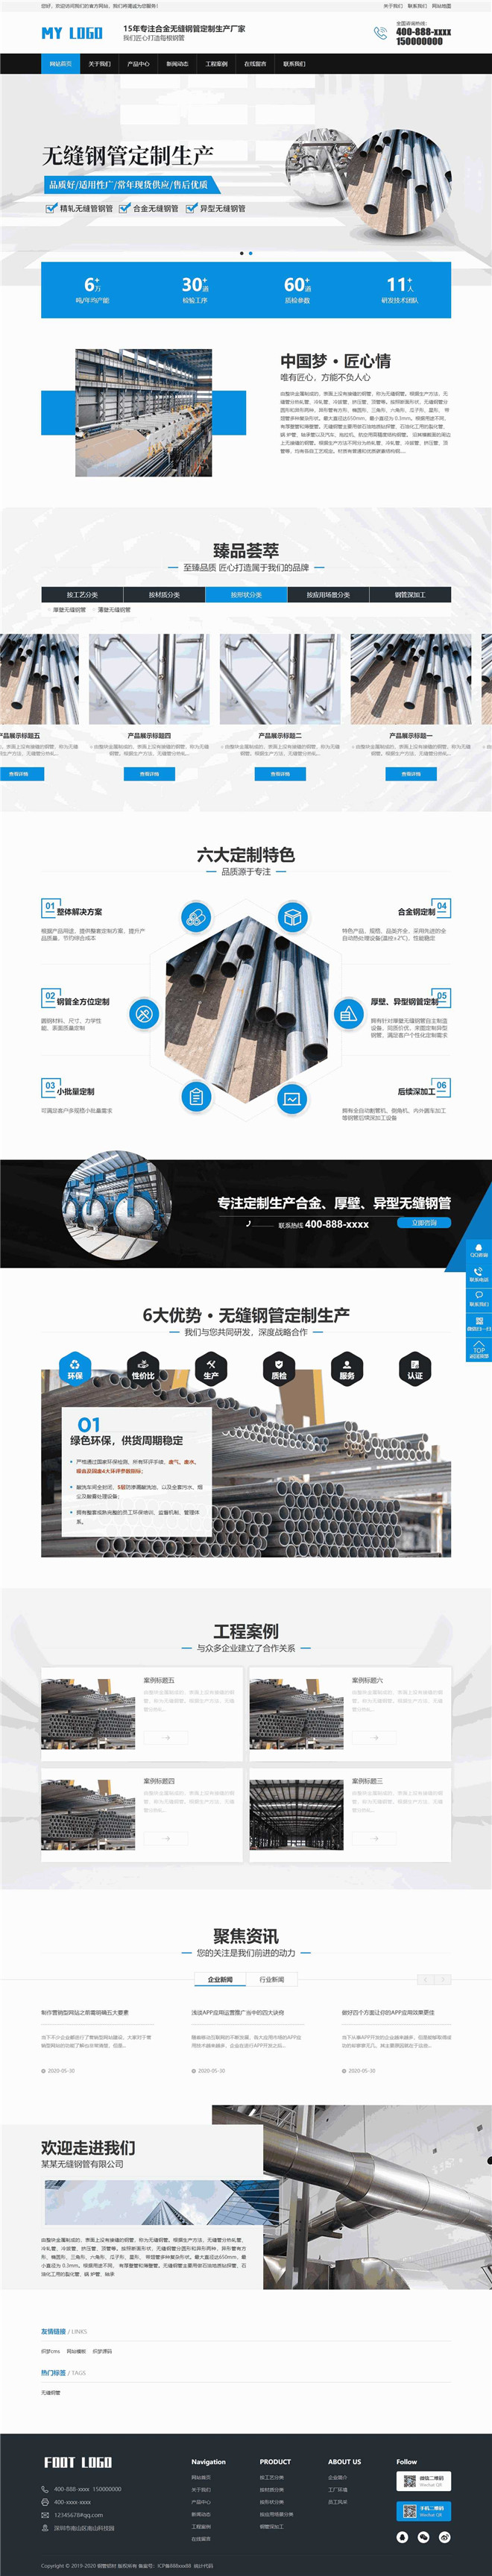 营销型钢管铝材金属制品通用网站制作_网站建设模板演示图